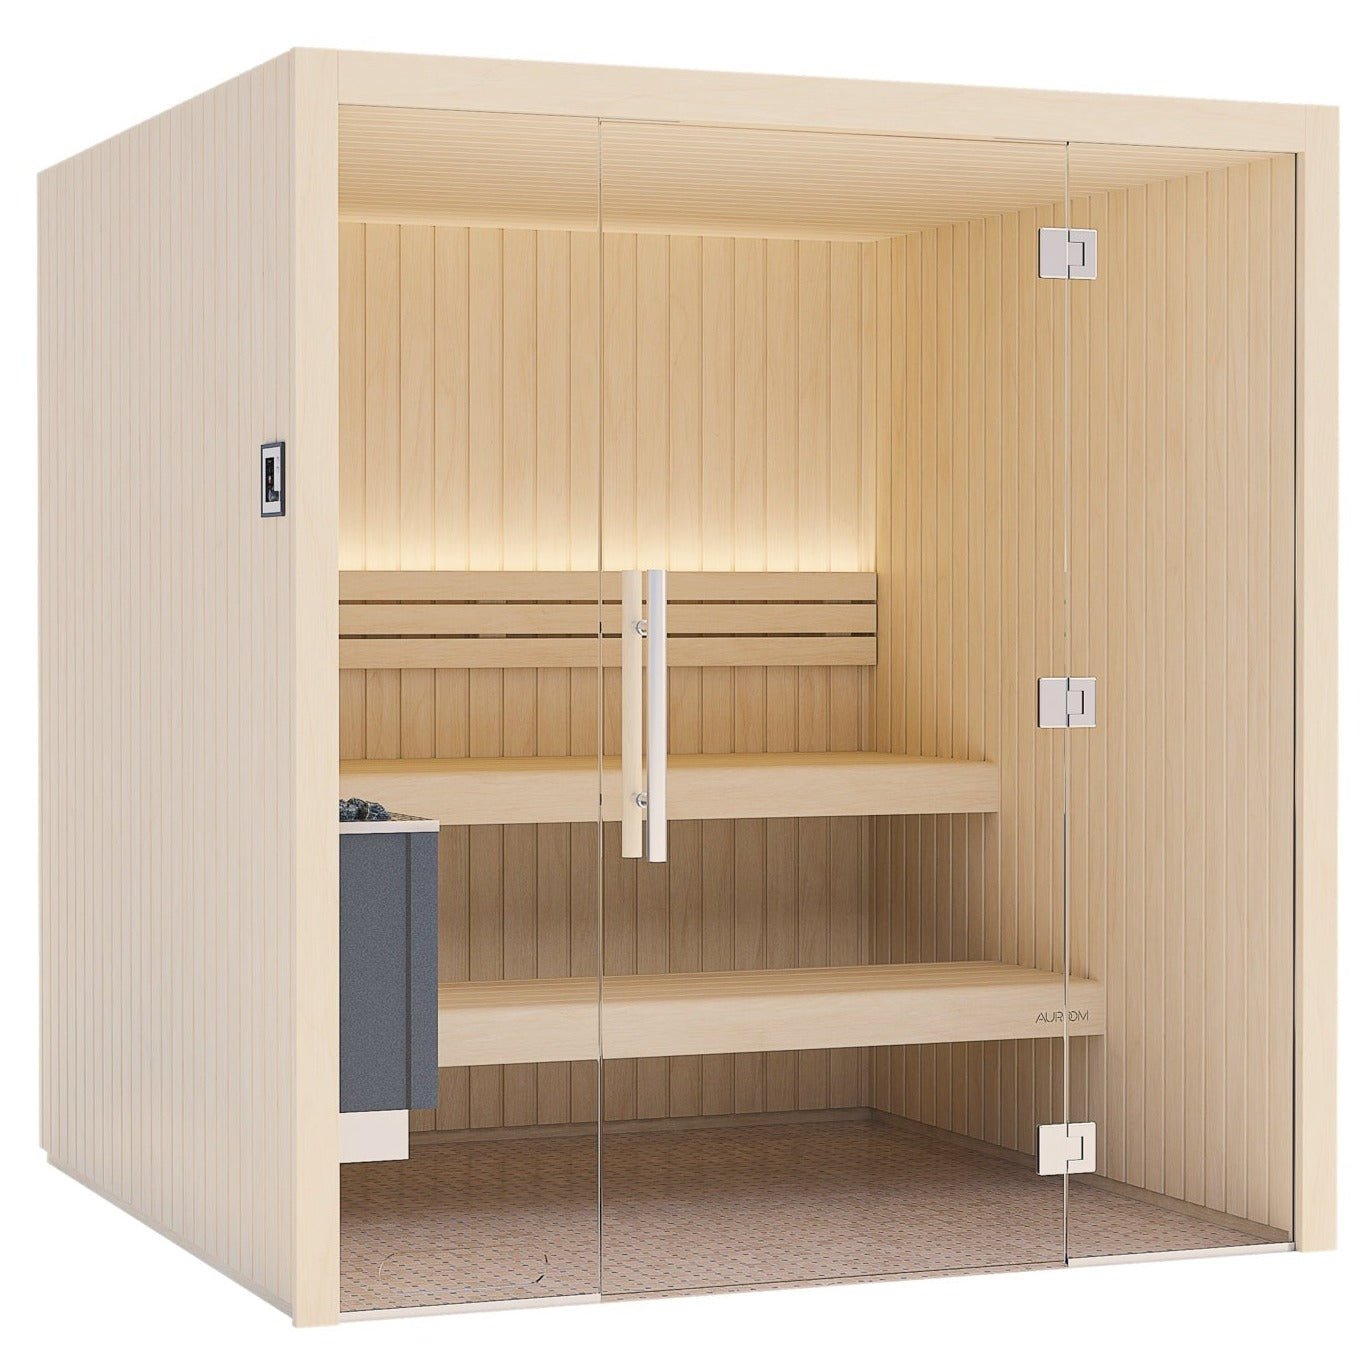 auroom-emma-glass-indoor-cabin-sauna-kit